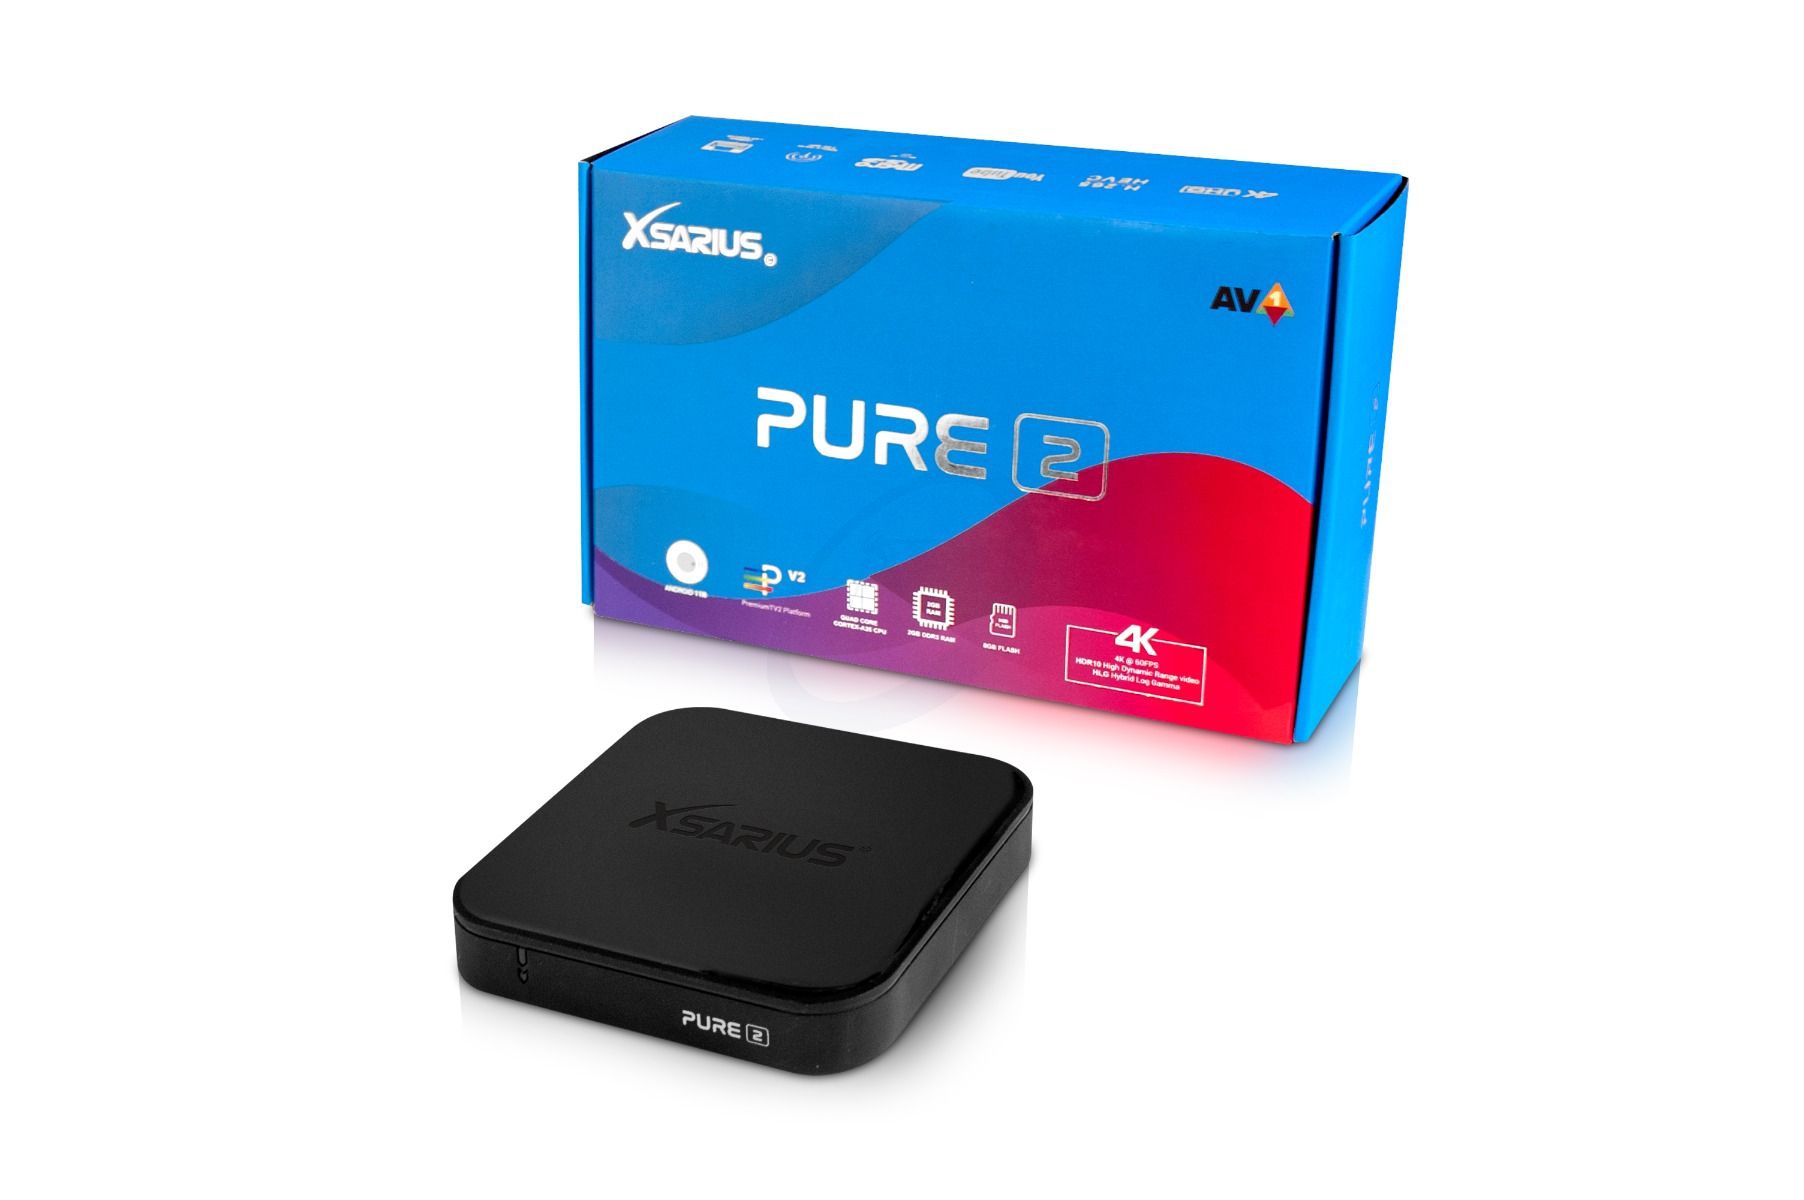 Xsarius PURE 2 4K Android 11 OTT 4K UHD IPTV Player H.265 HEVC Wlan